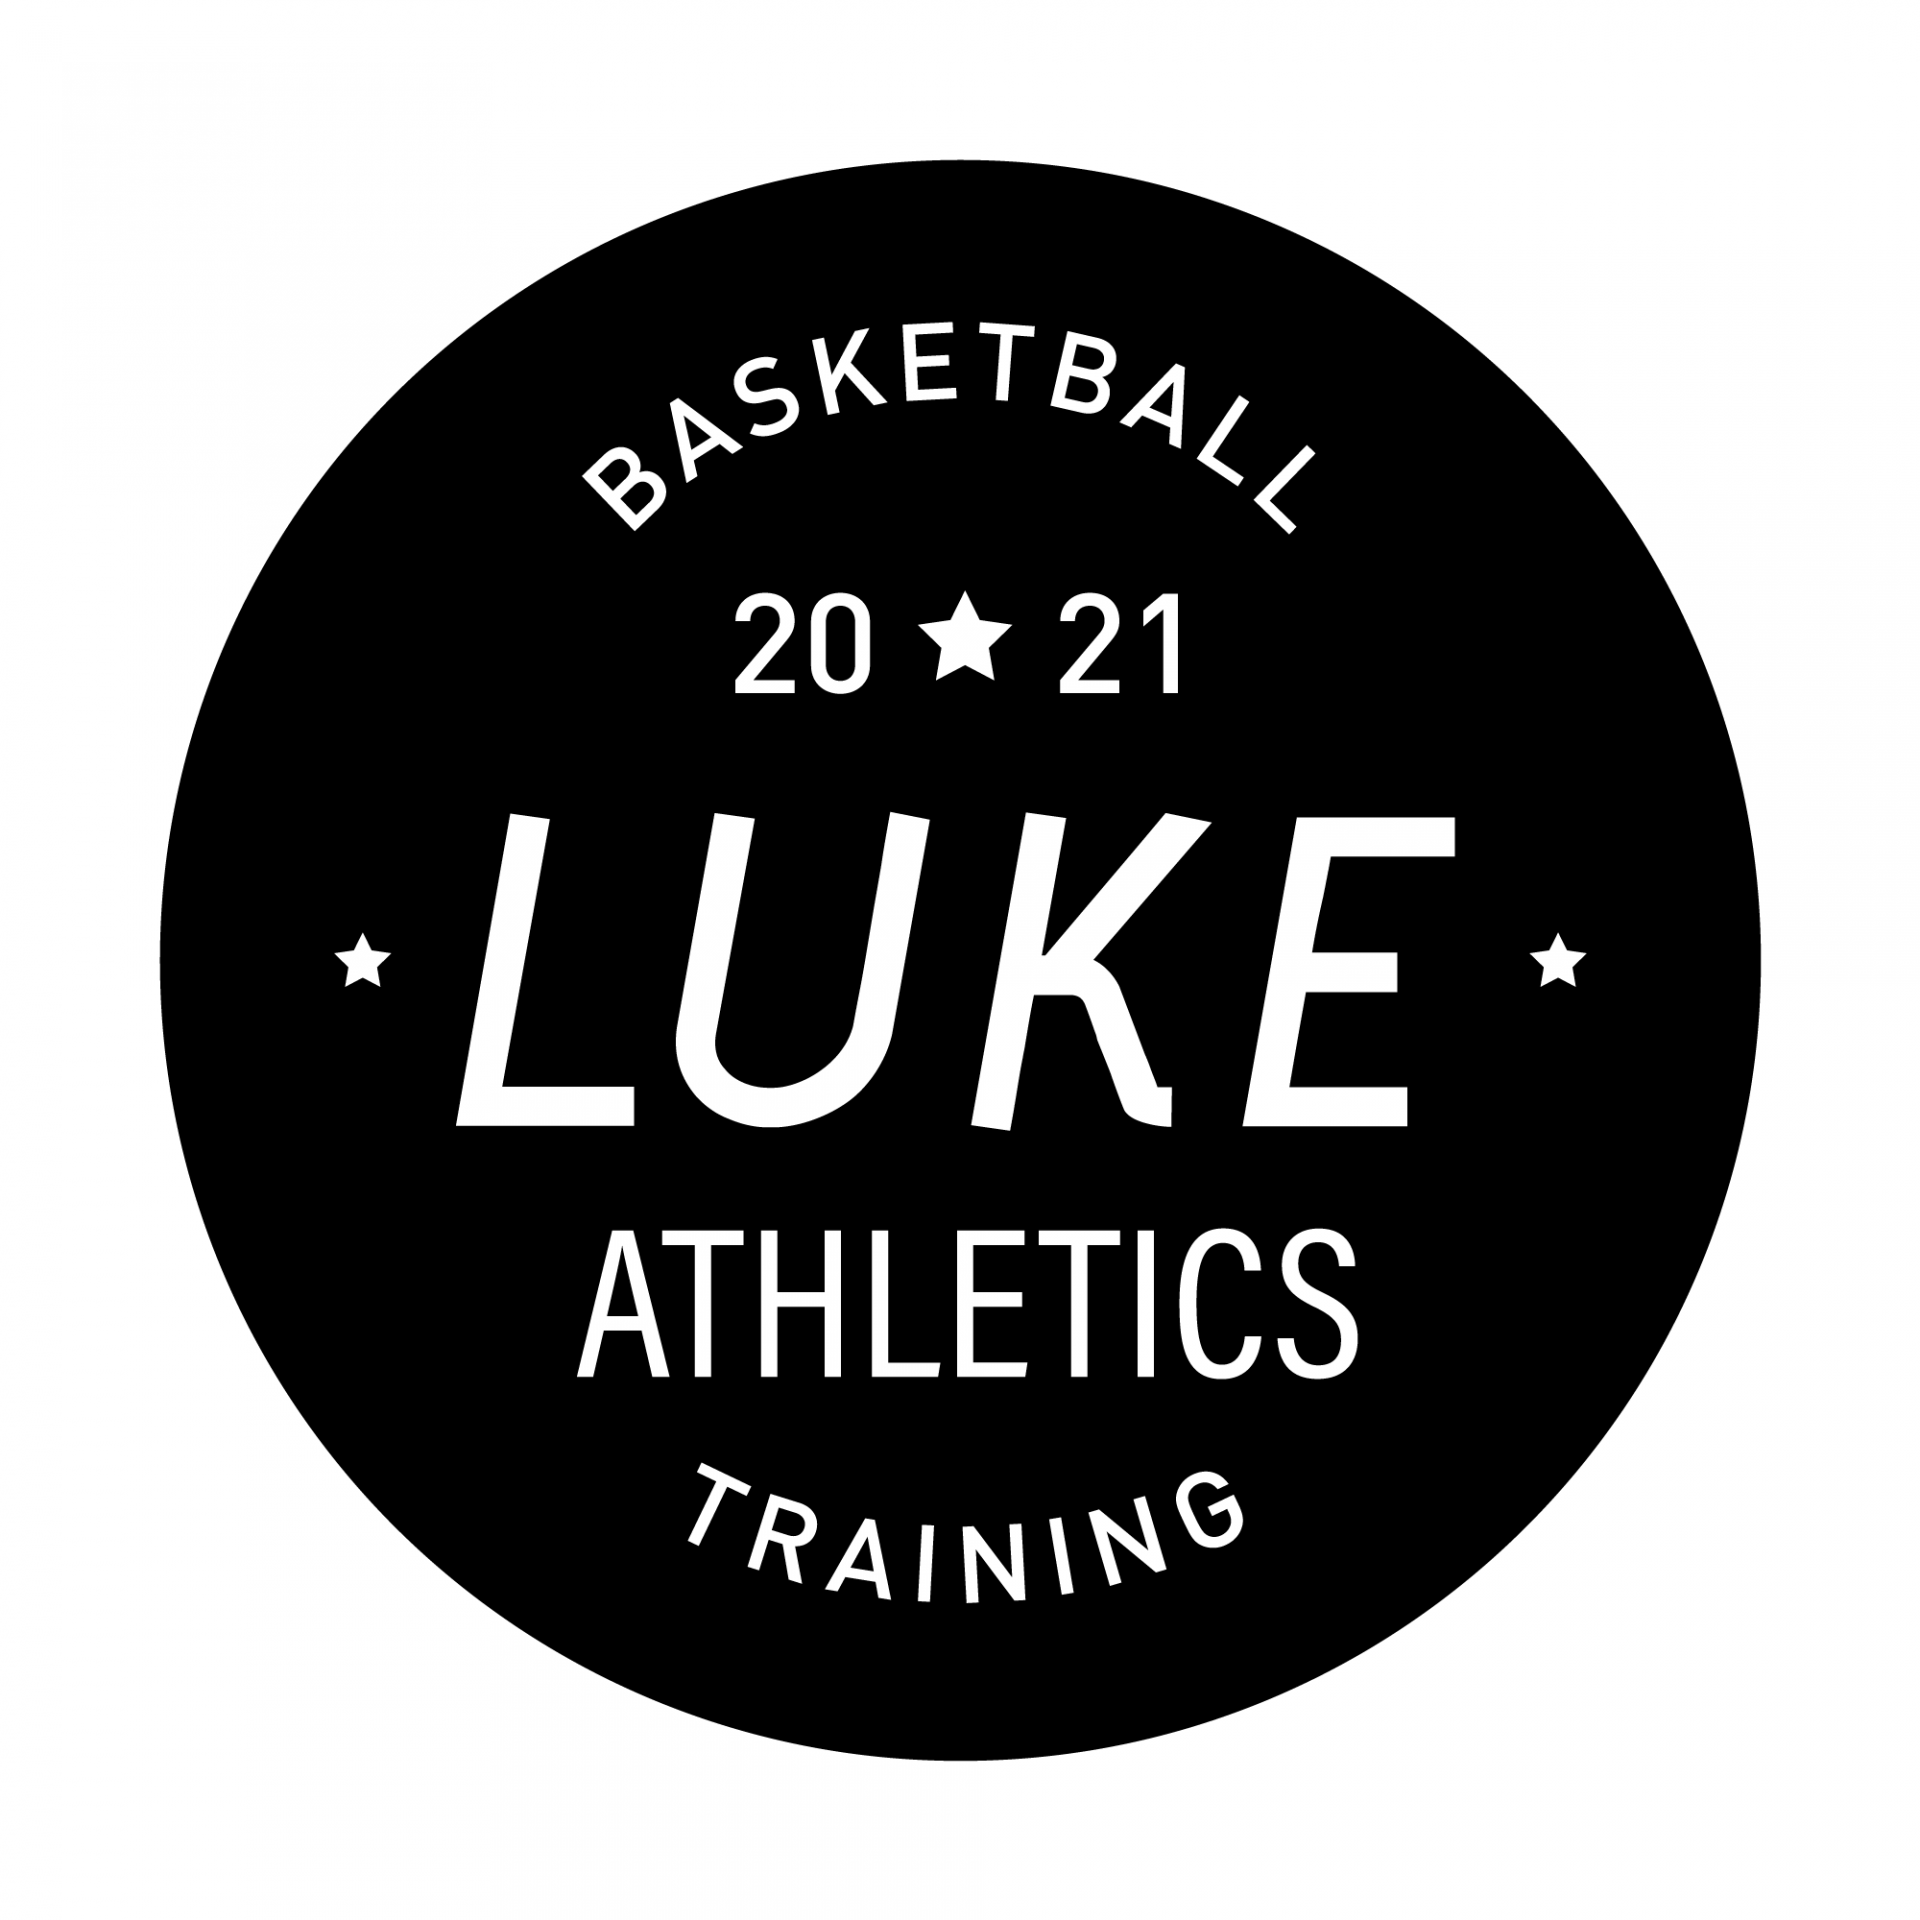 Luke Athletics盧克籃球俱樂部